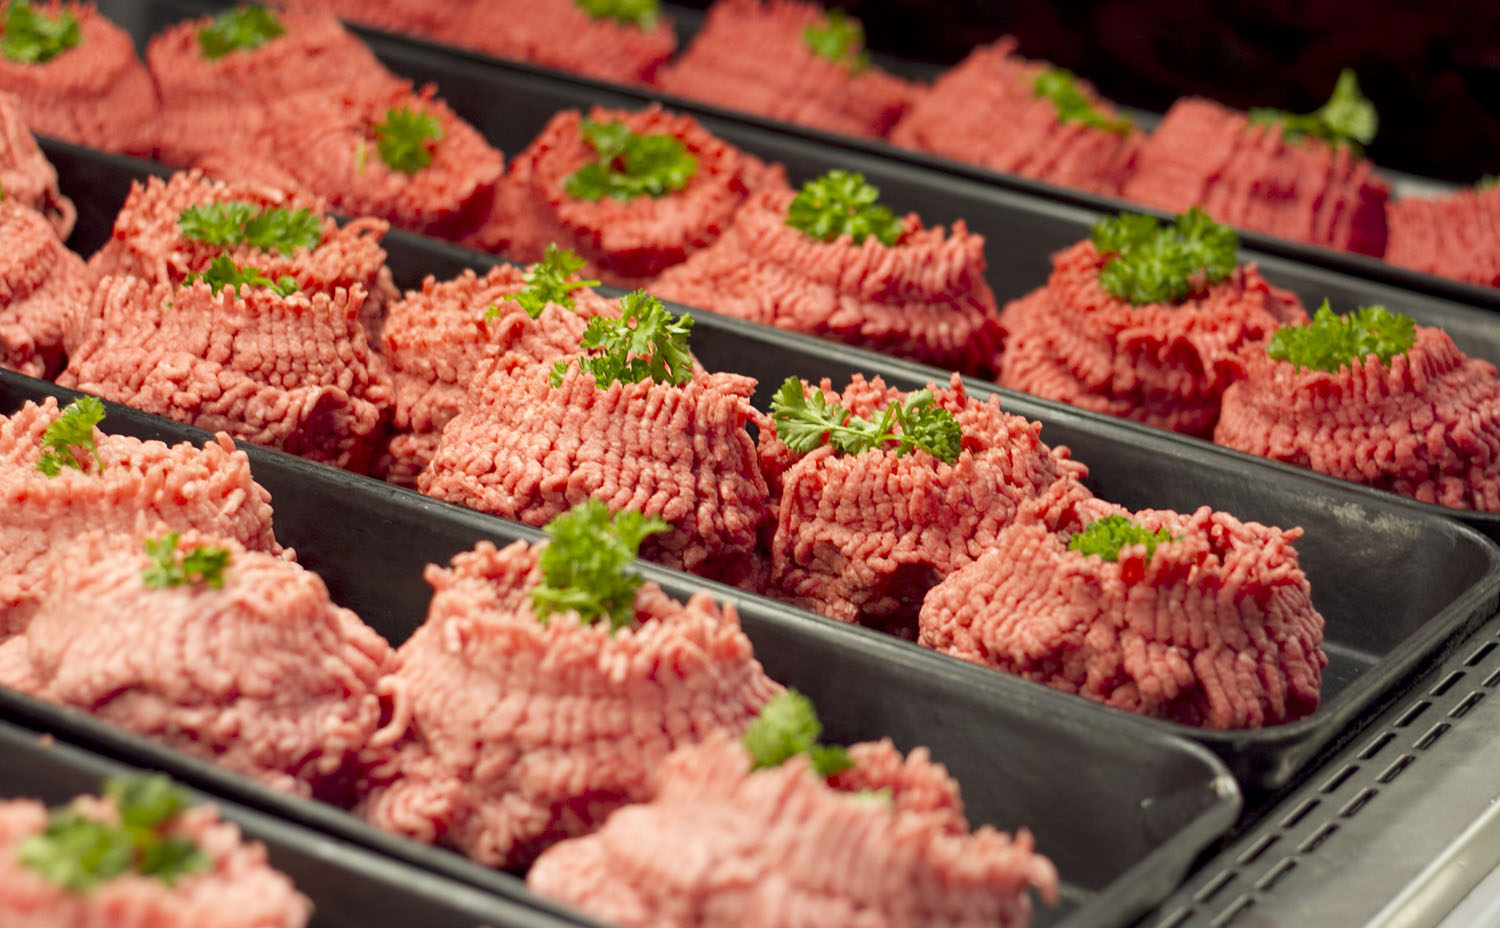 التوقيع على اتفاقية حول التكوين المهني في مجال إنتاج اللحوم الحمراء